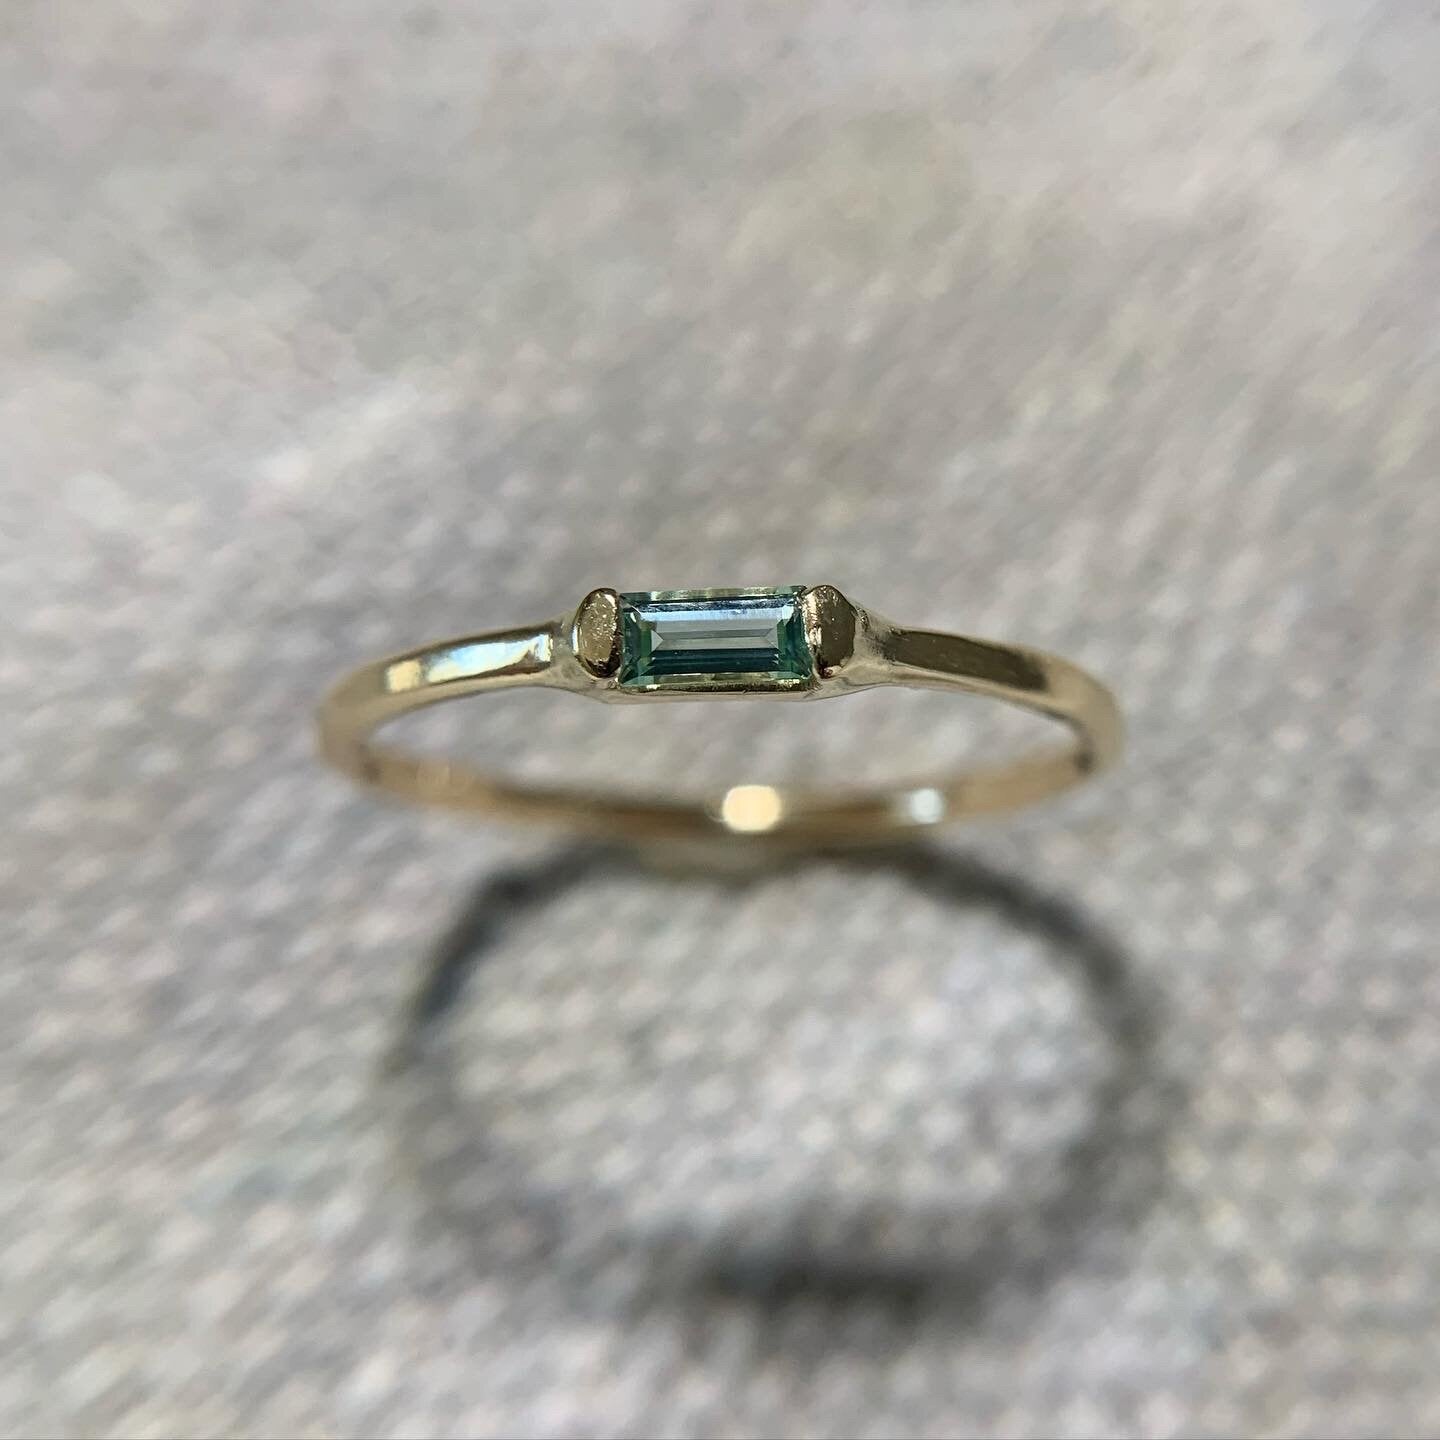 Mint tourmaline ring